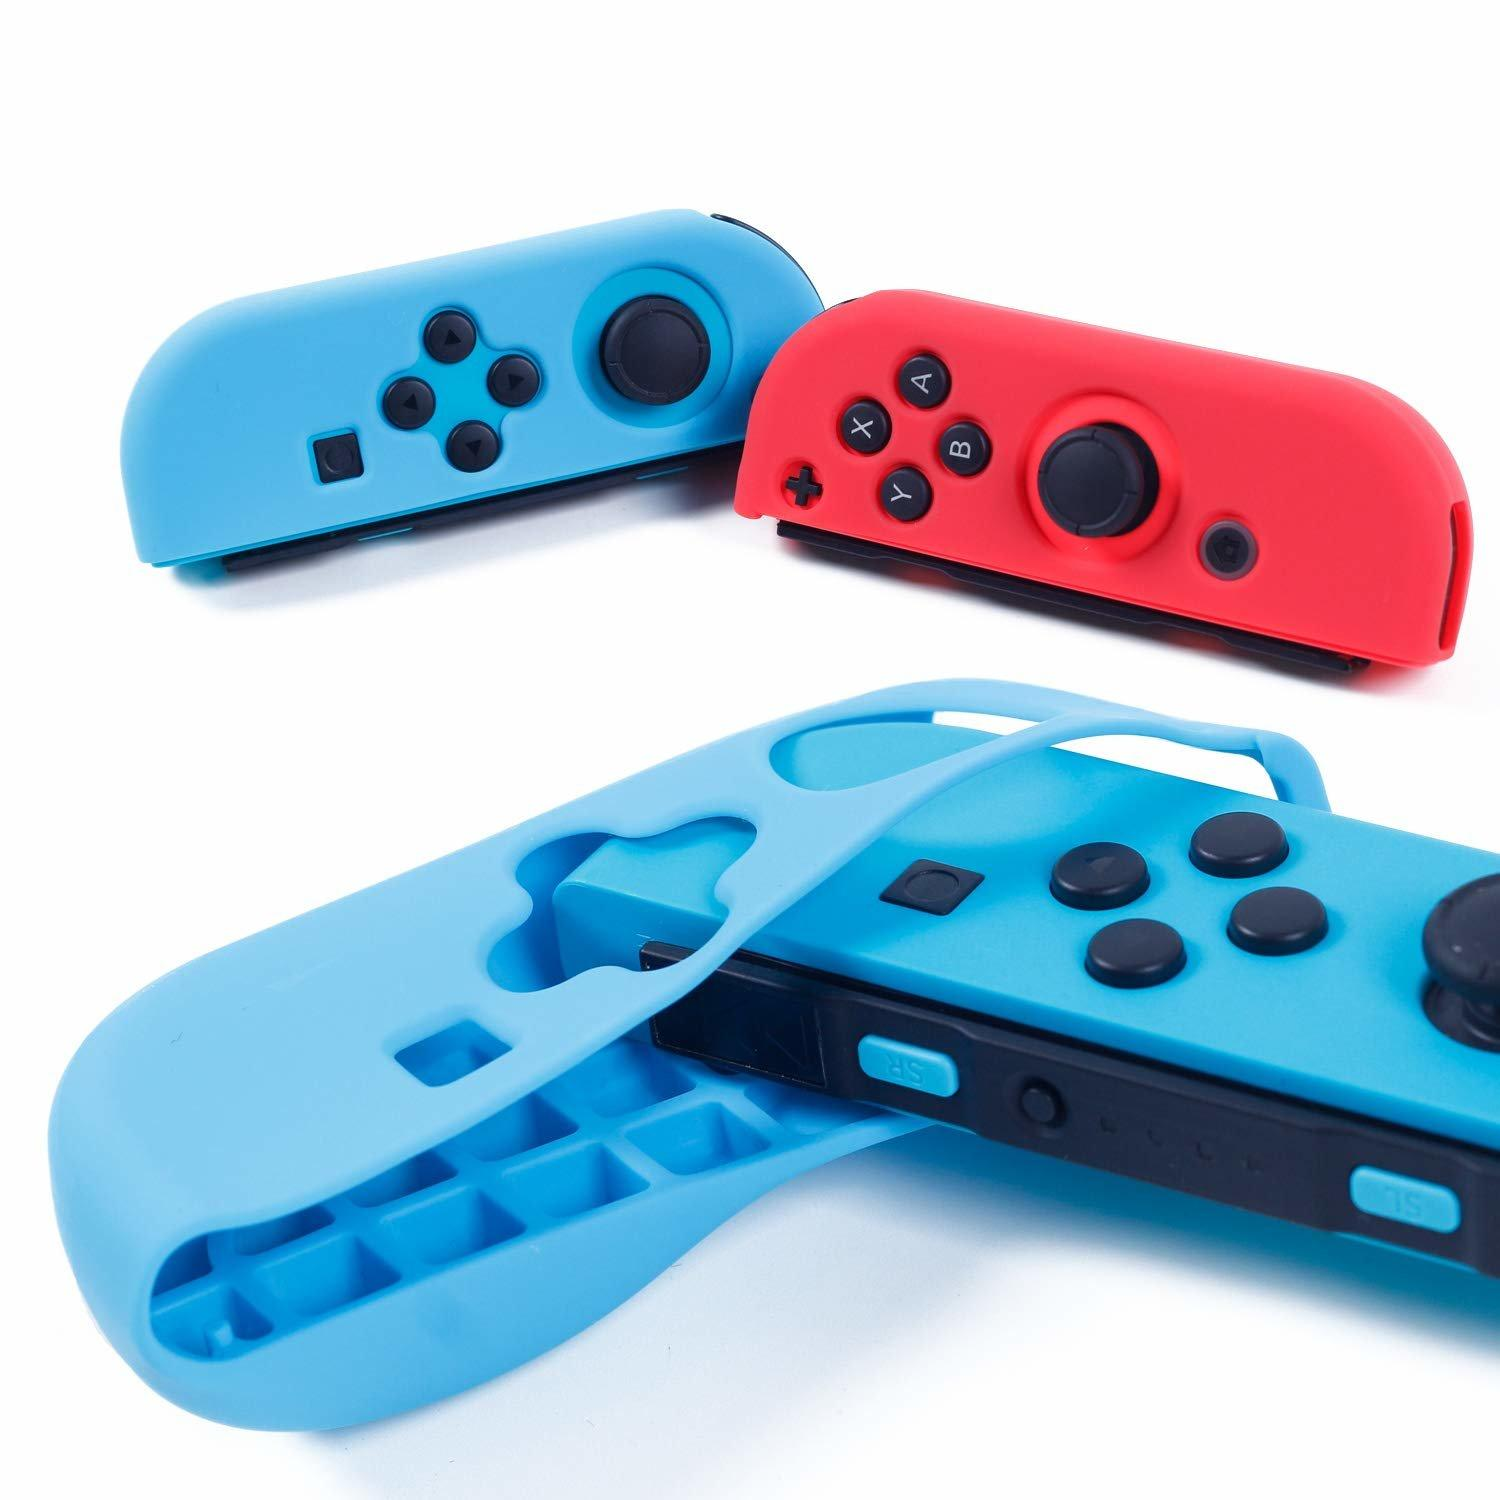 Nintendo Zubehör schwarz INF Nintendo-Hülle, rot mit Tragetasche und Switch